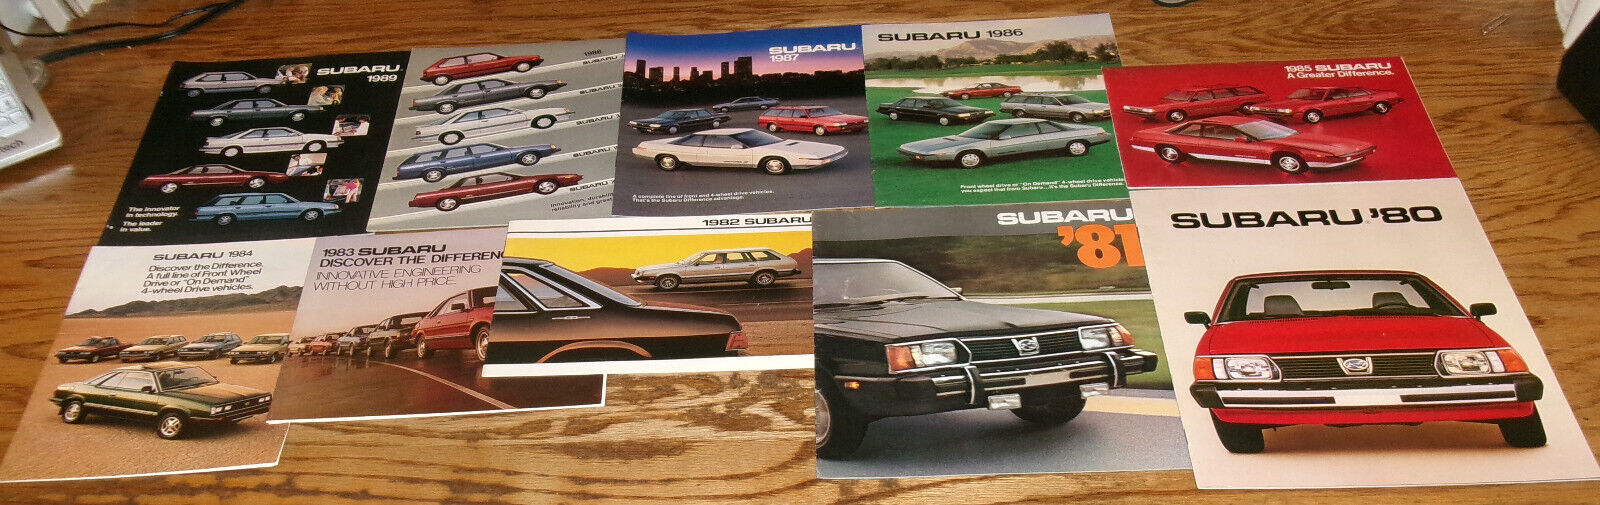 1980 1981 1982 1983 1984 - 1989 Subaru Full Line Sales Brochure Lot 10 XT